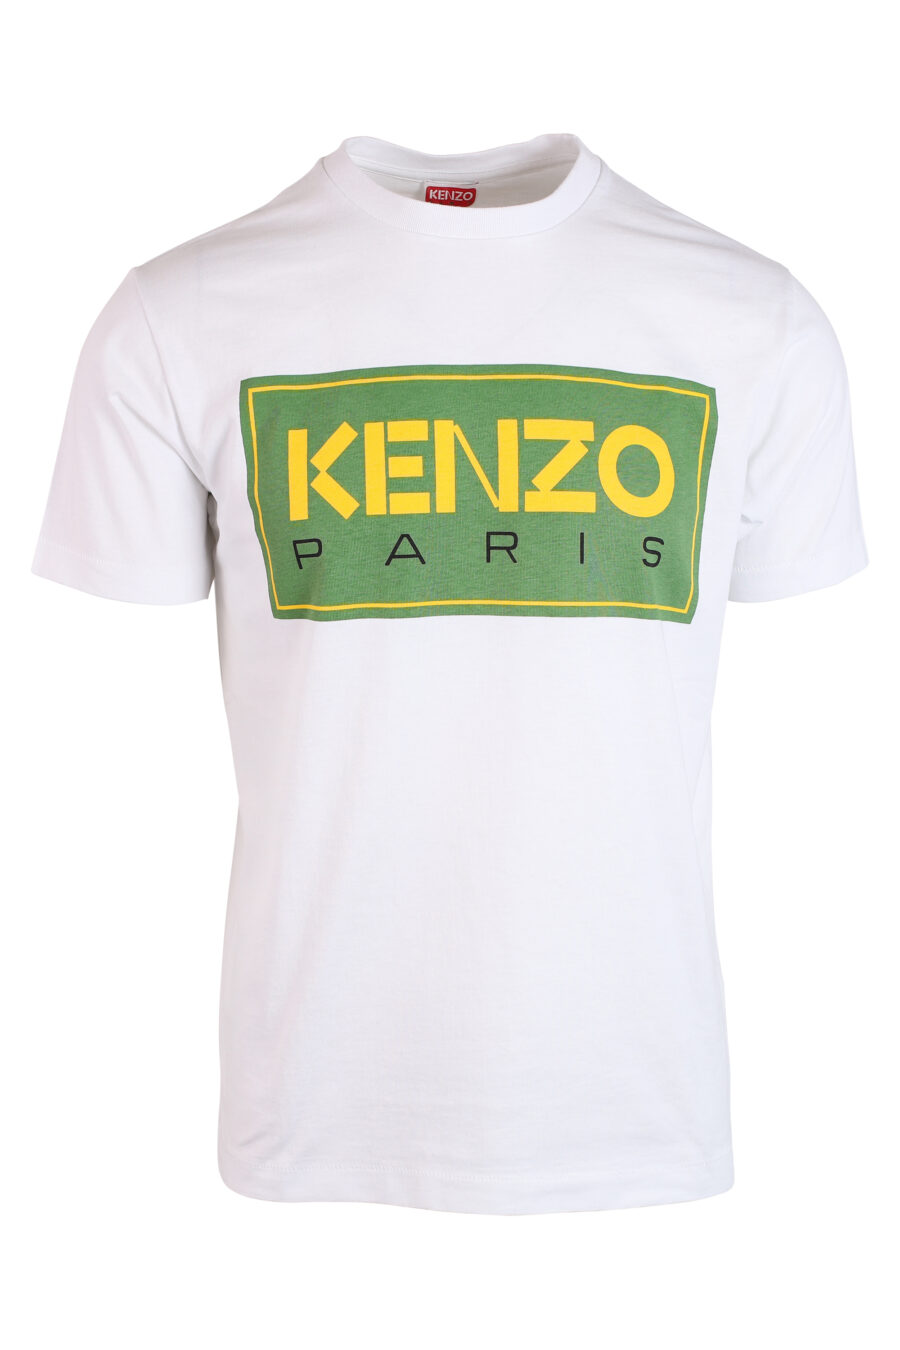 Camiseta blanca con maxilogo "paris classic" verde - IMG 3263